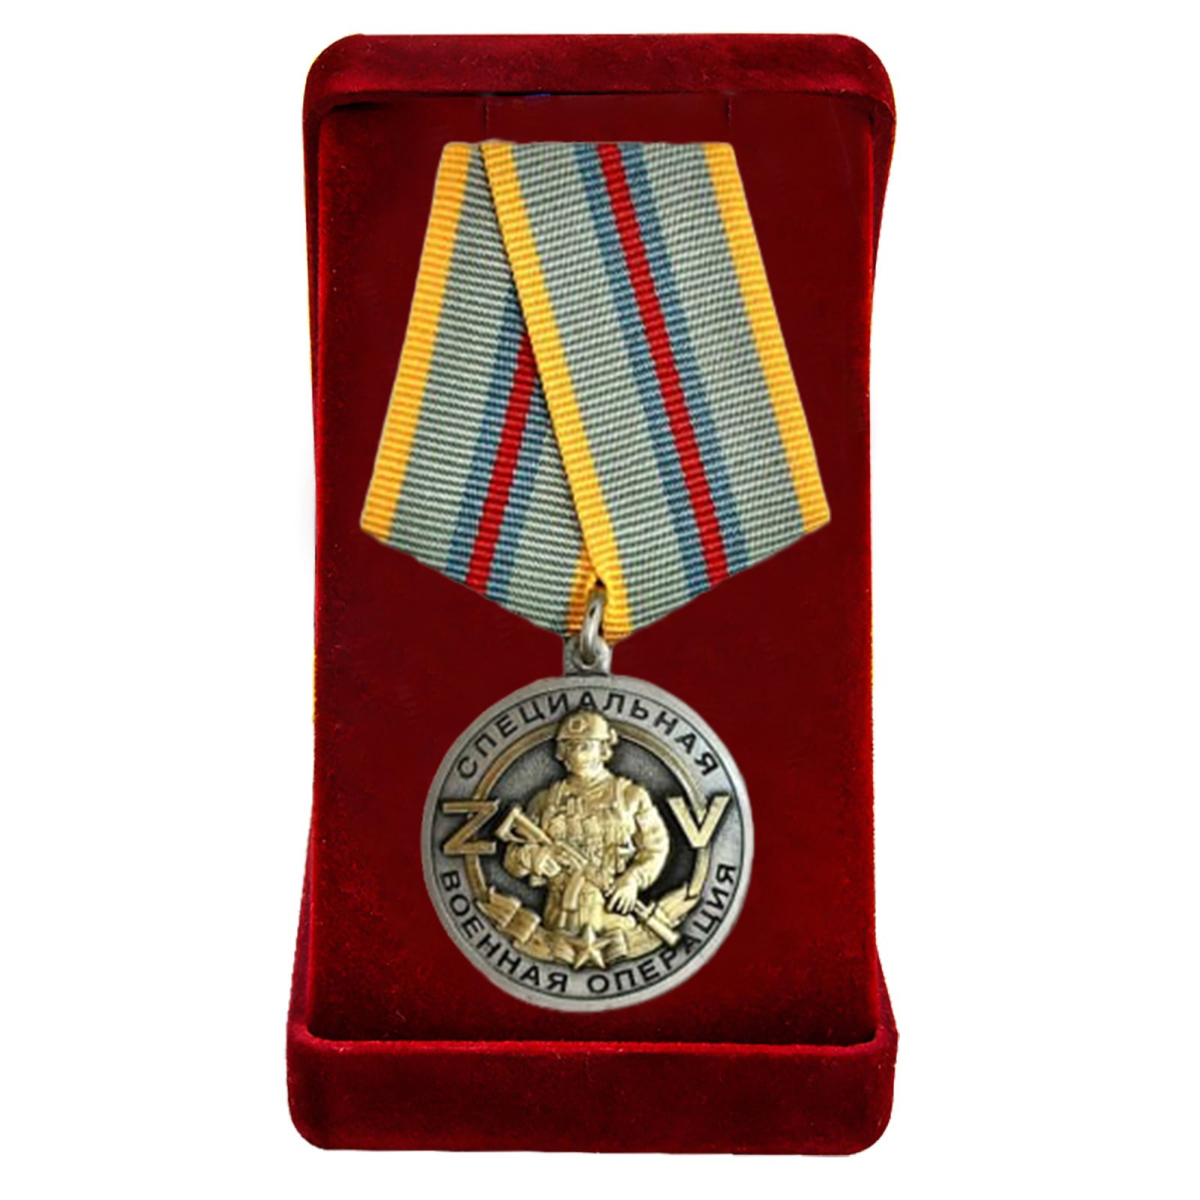 Купить медаль Ветеран боевых действий на Украине онлайн